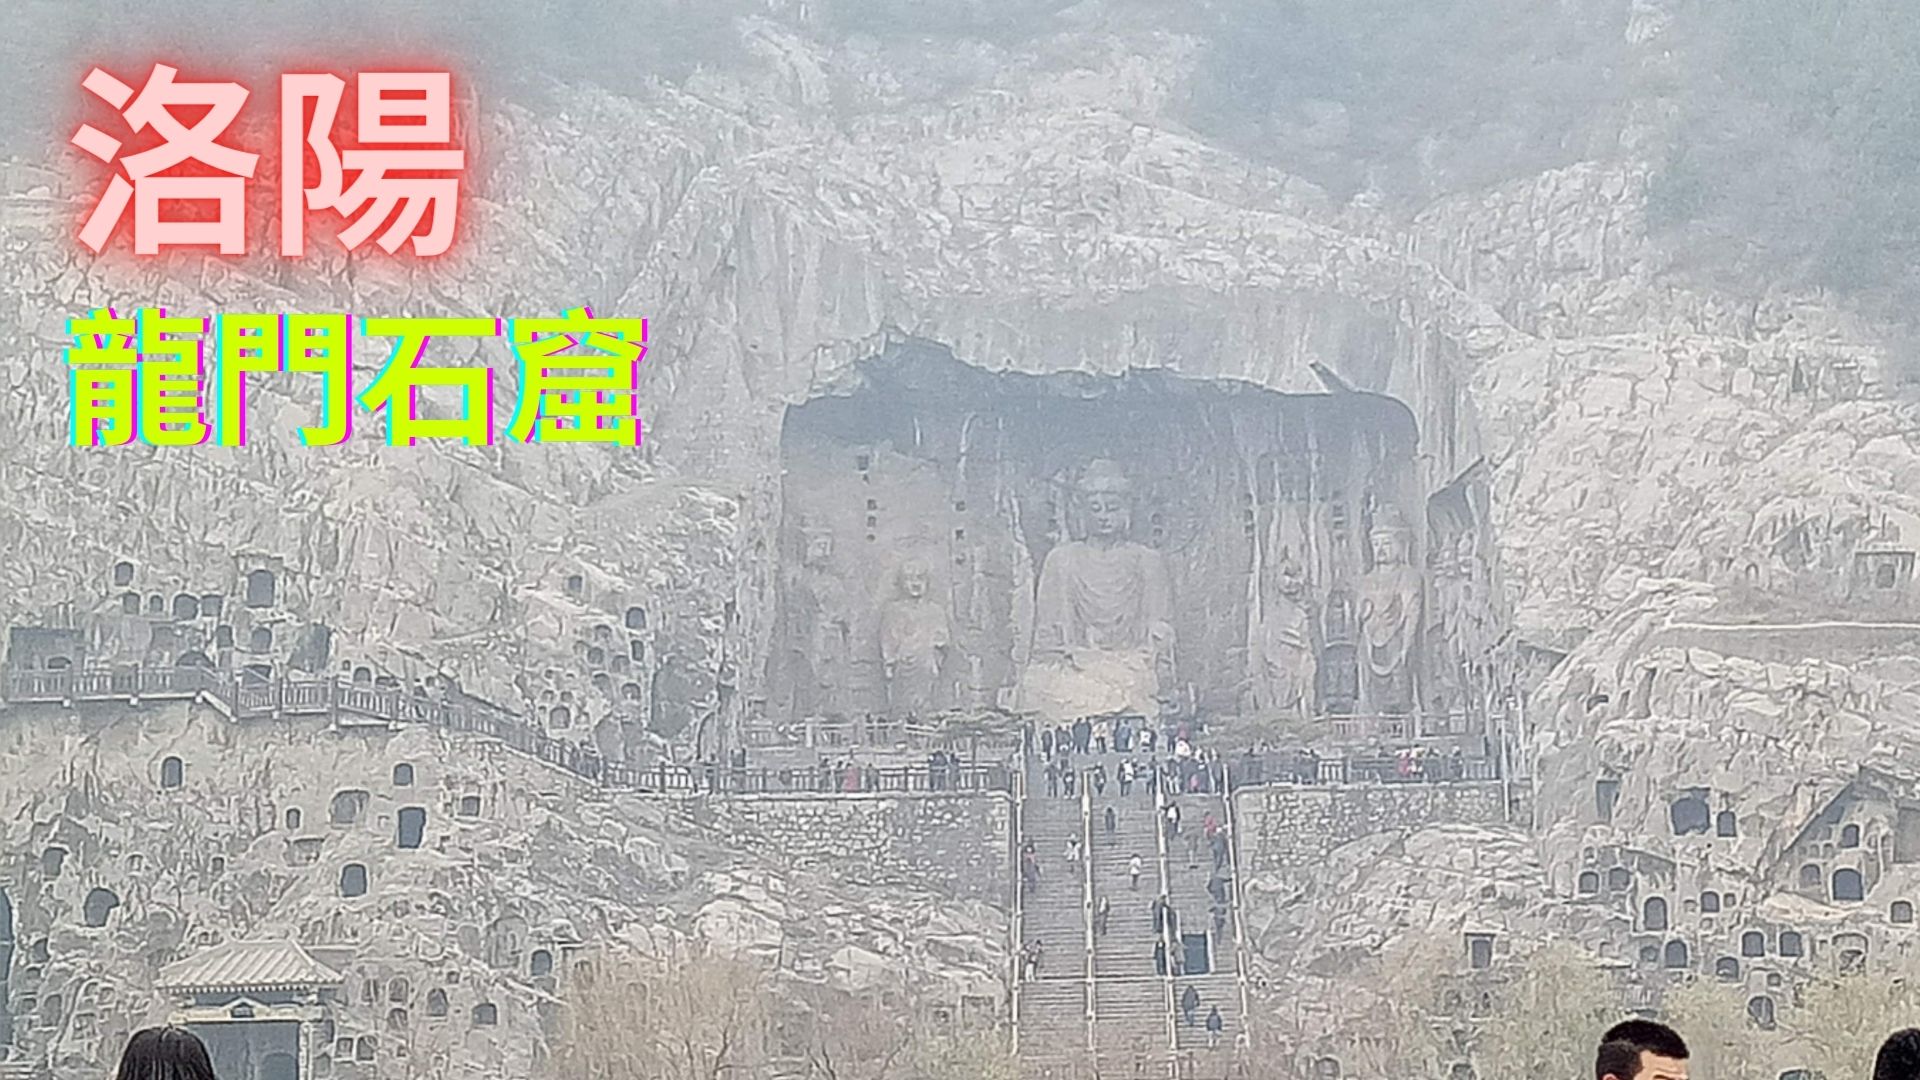 旅行影片 #20： 中国 洛阳 龙门石窟